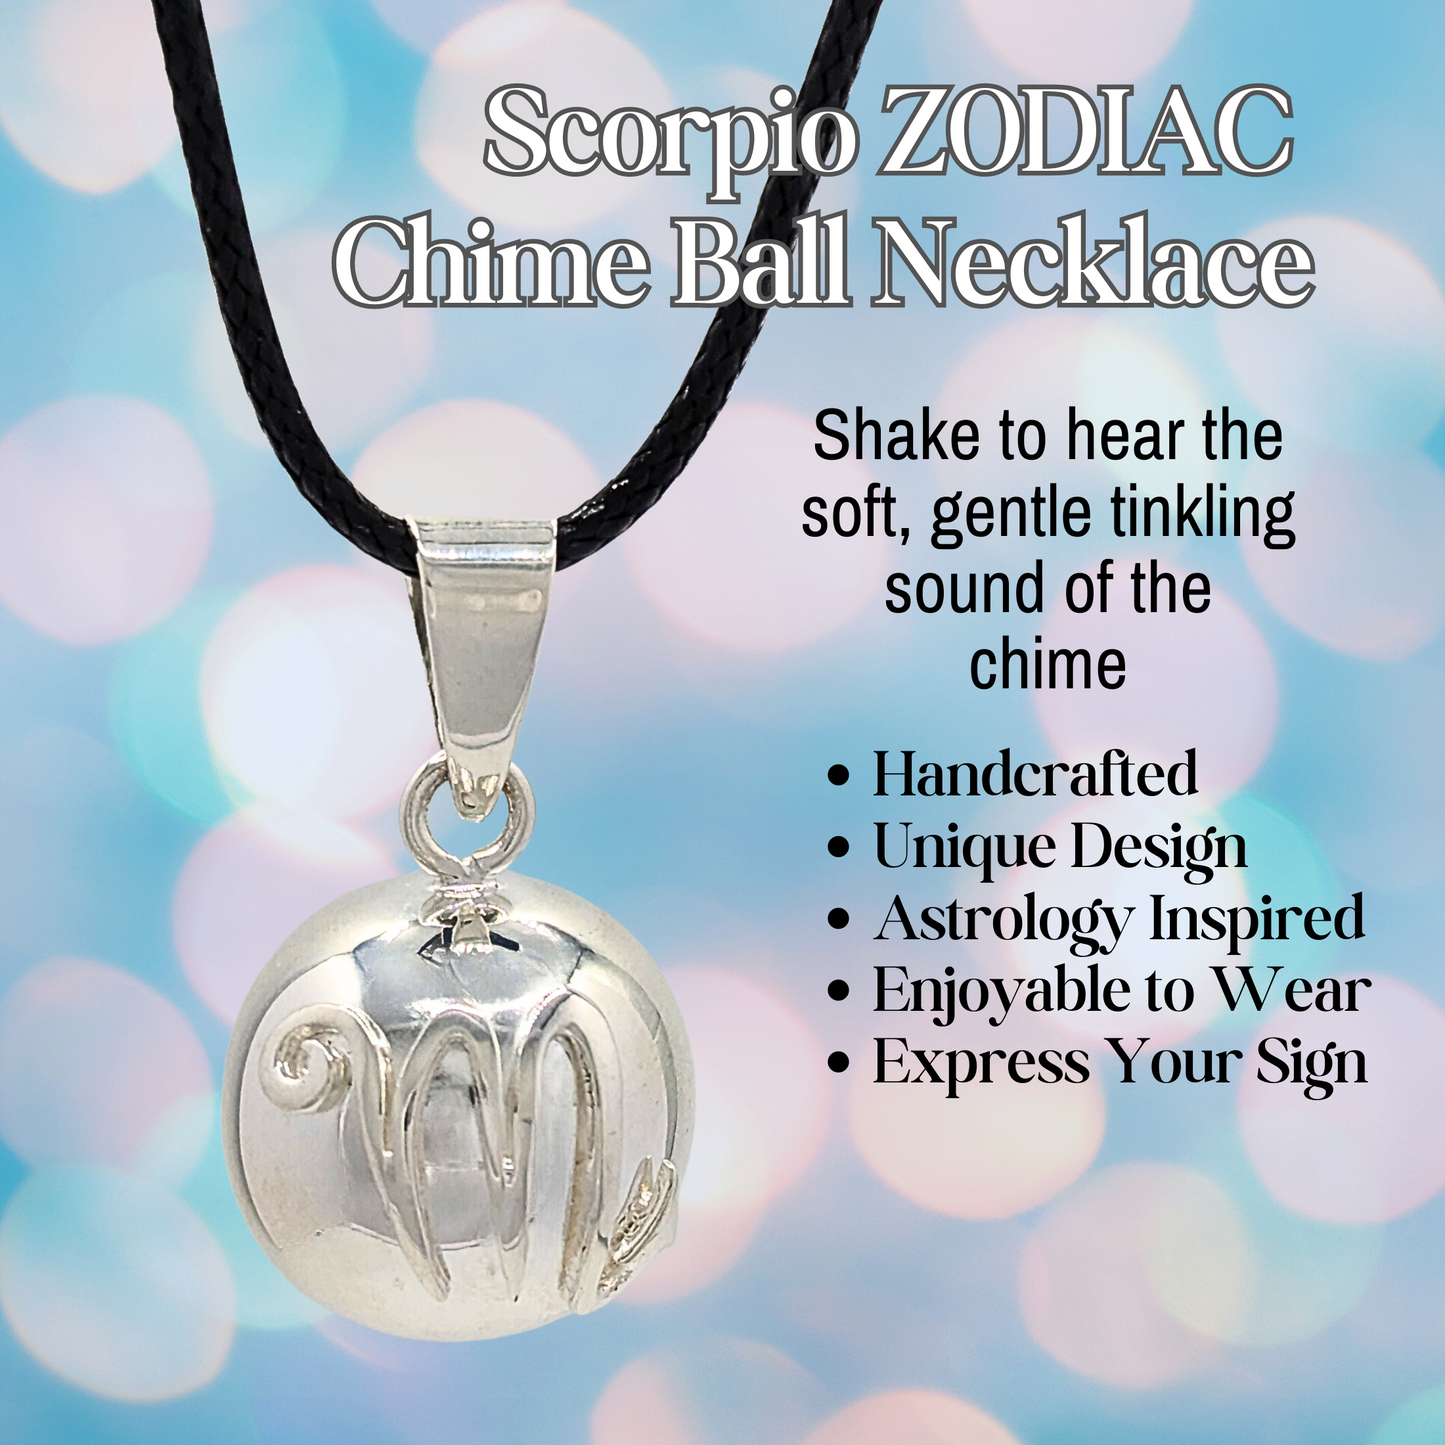 Scorpio Zodiac Chime Necklace